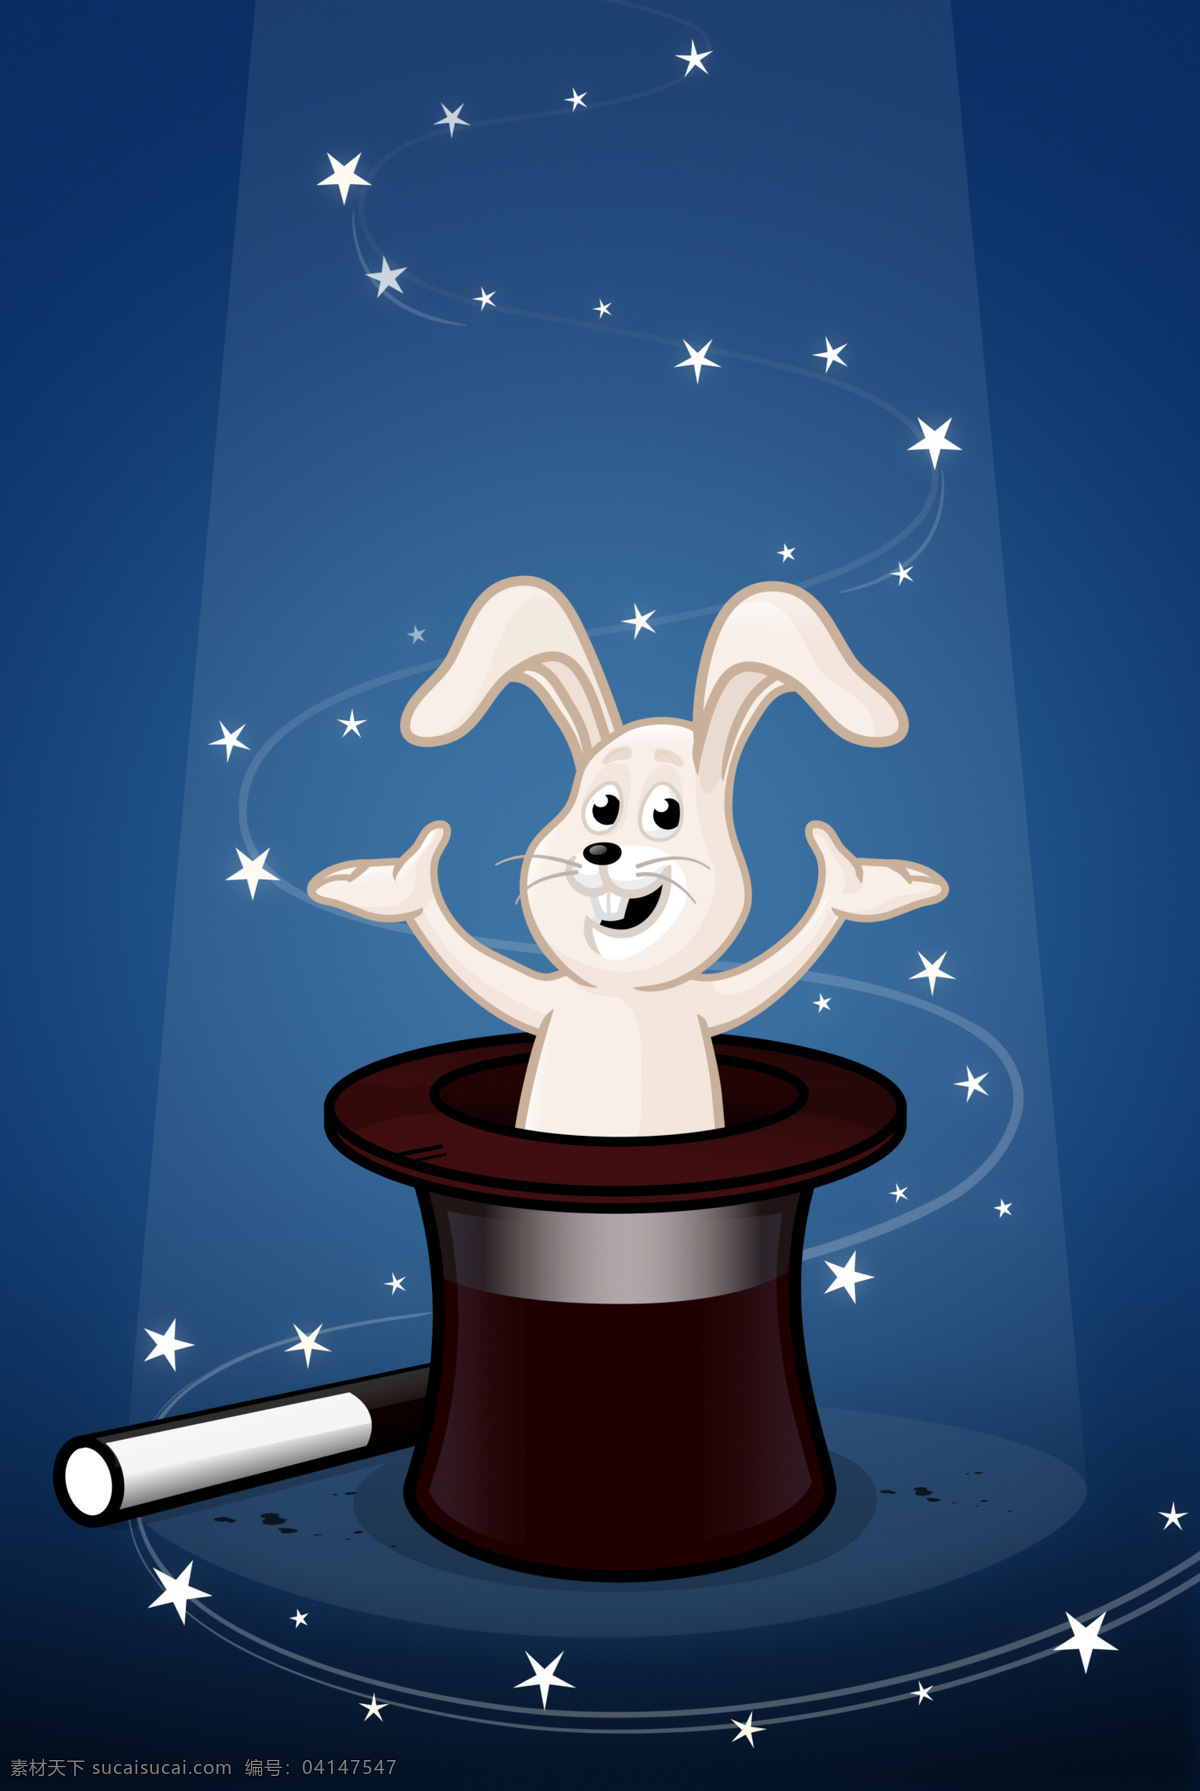 插画 动漫动画 动物 卡通 卡通兔 可爱 漫画 帽子 兔 设计素材 模板下载 小动物 兔子 魔术 插画集